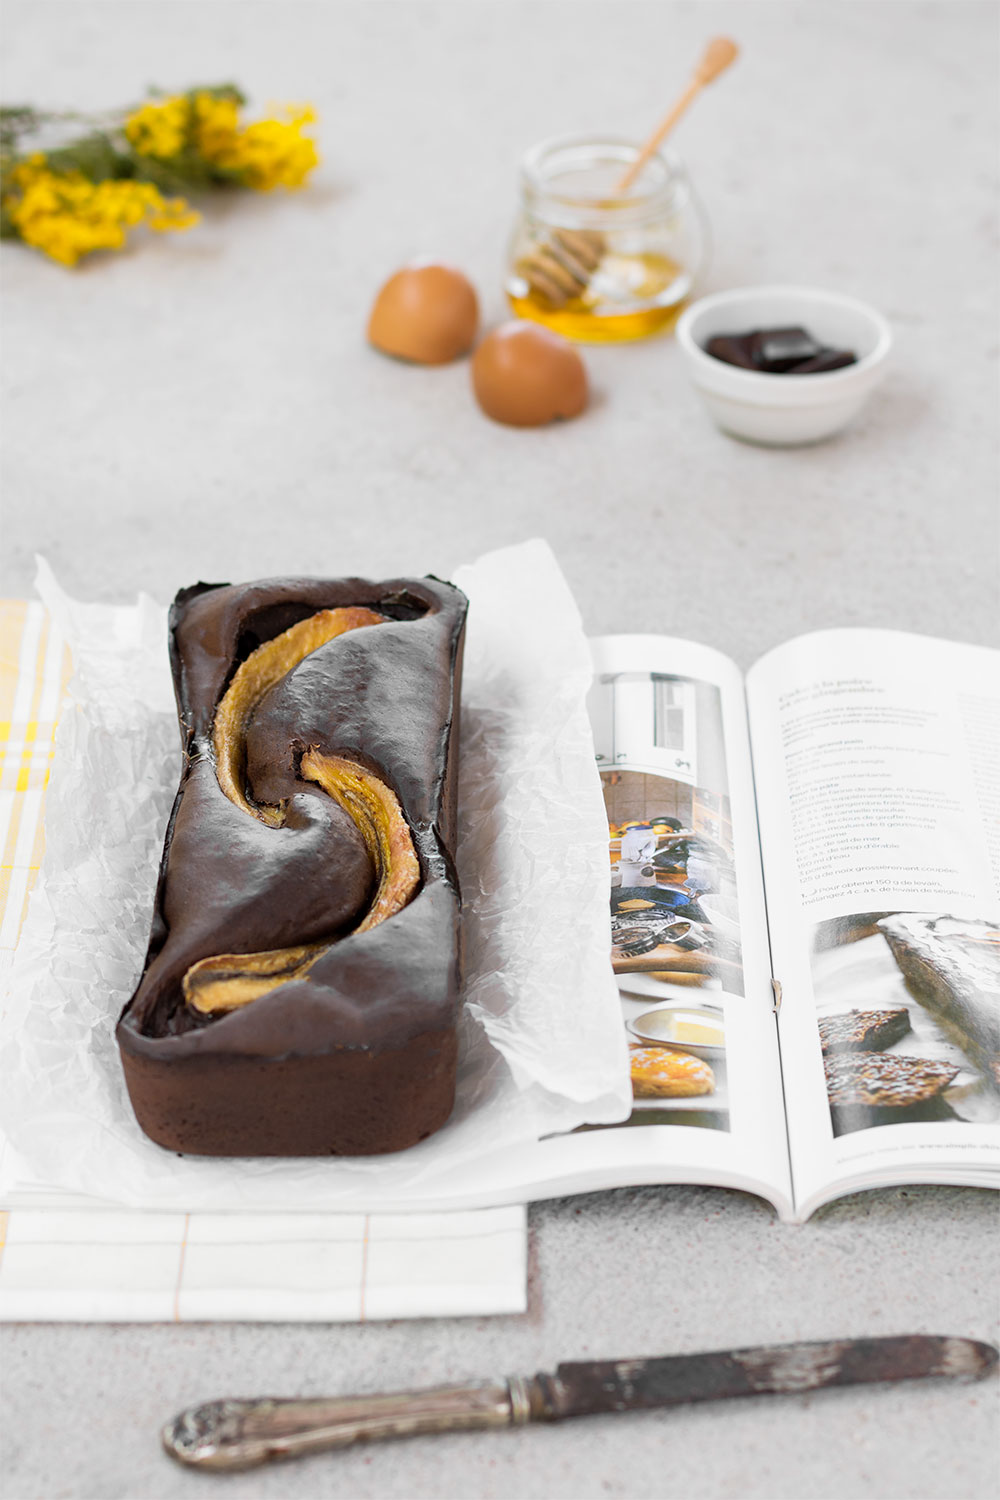 Recette facile et stylisme culinaire d'un banana bread au chocolat posé sur un magazine et un torchon à carreaux, au milieu d'ingrédients qui le compose